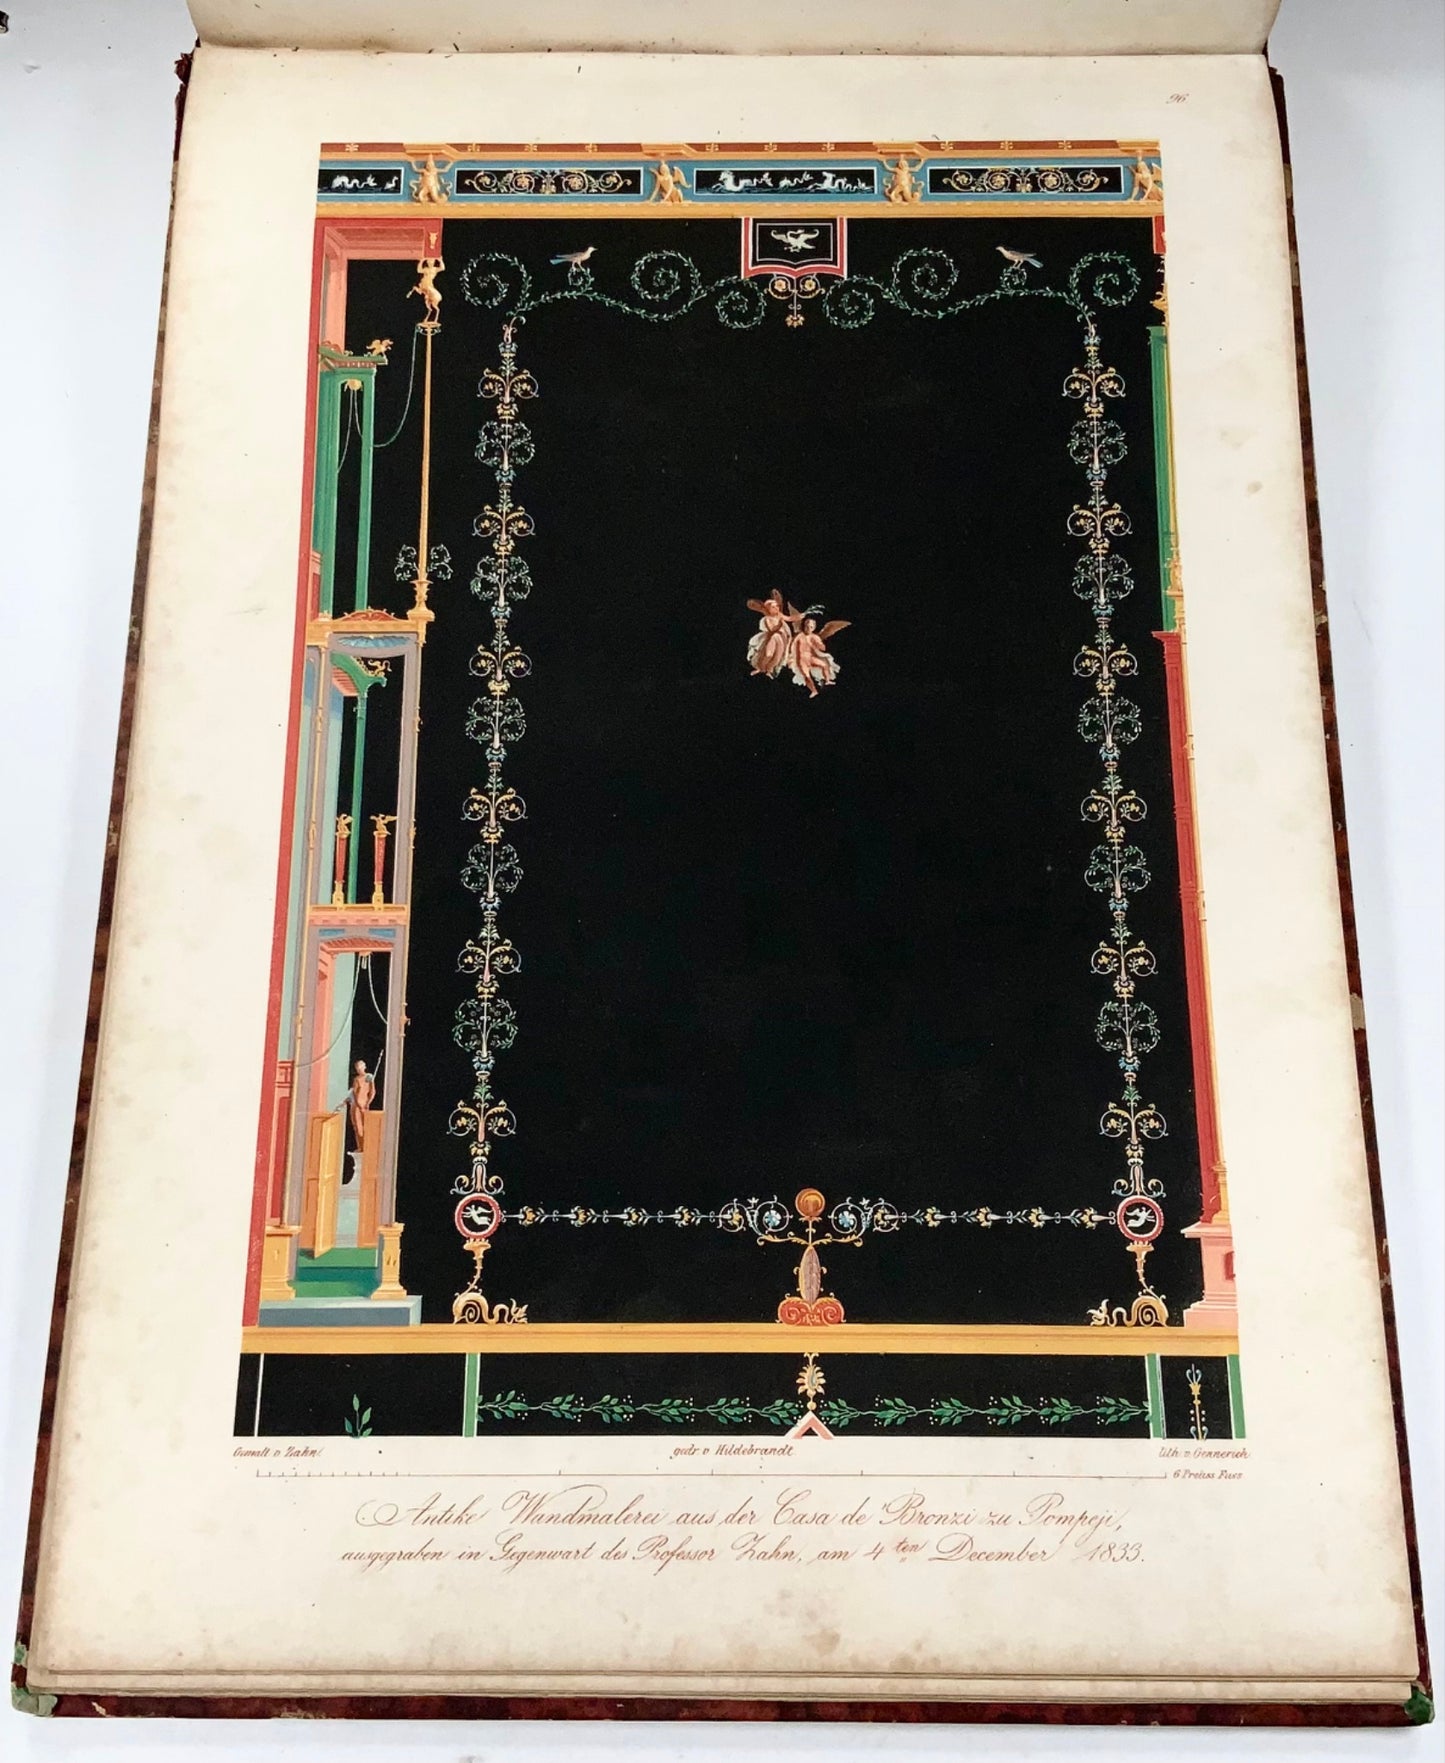 1848 Wm Zahn, Beau livre in-folio sur la peinture murale pompéienne, 50 lithographies en couleurs